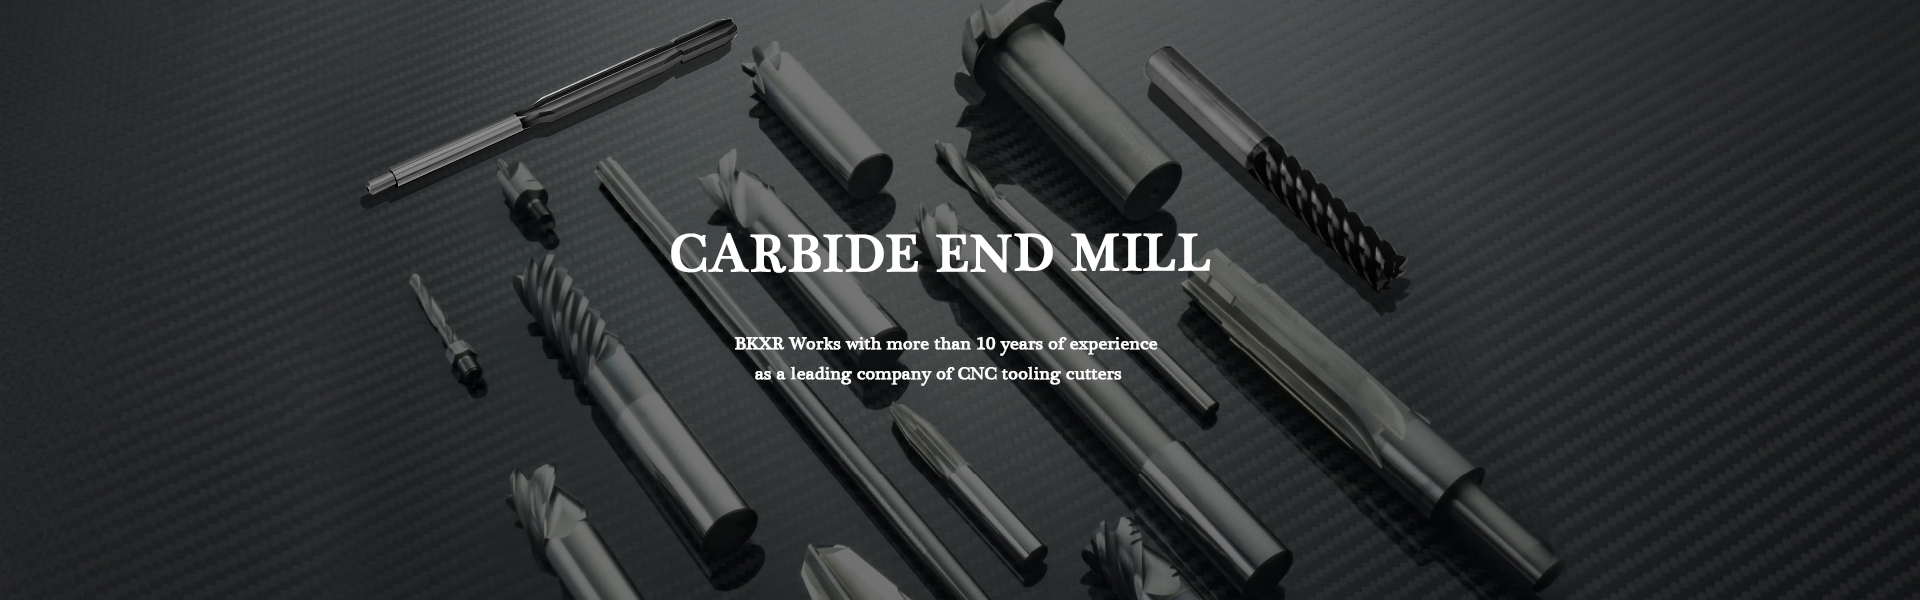 Karbidový koncový mlýn, karbidová vložka, CNC řezačka,Guangdong Berkshire Technology Ltd.